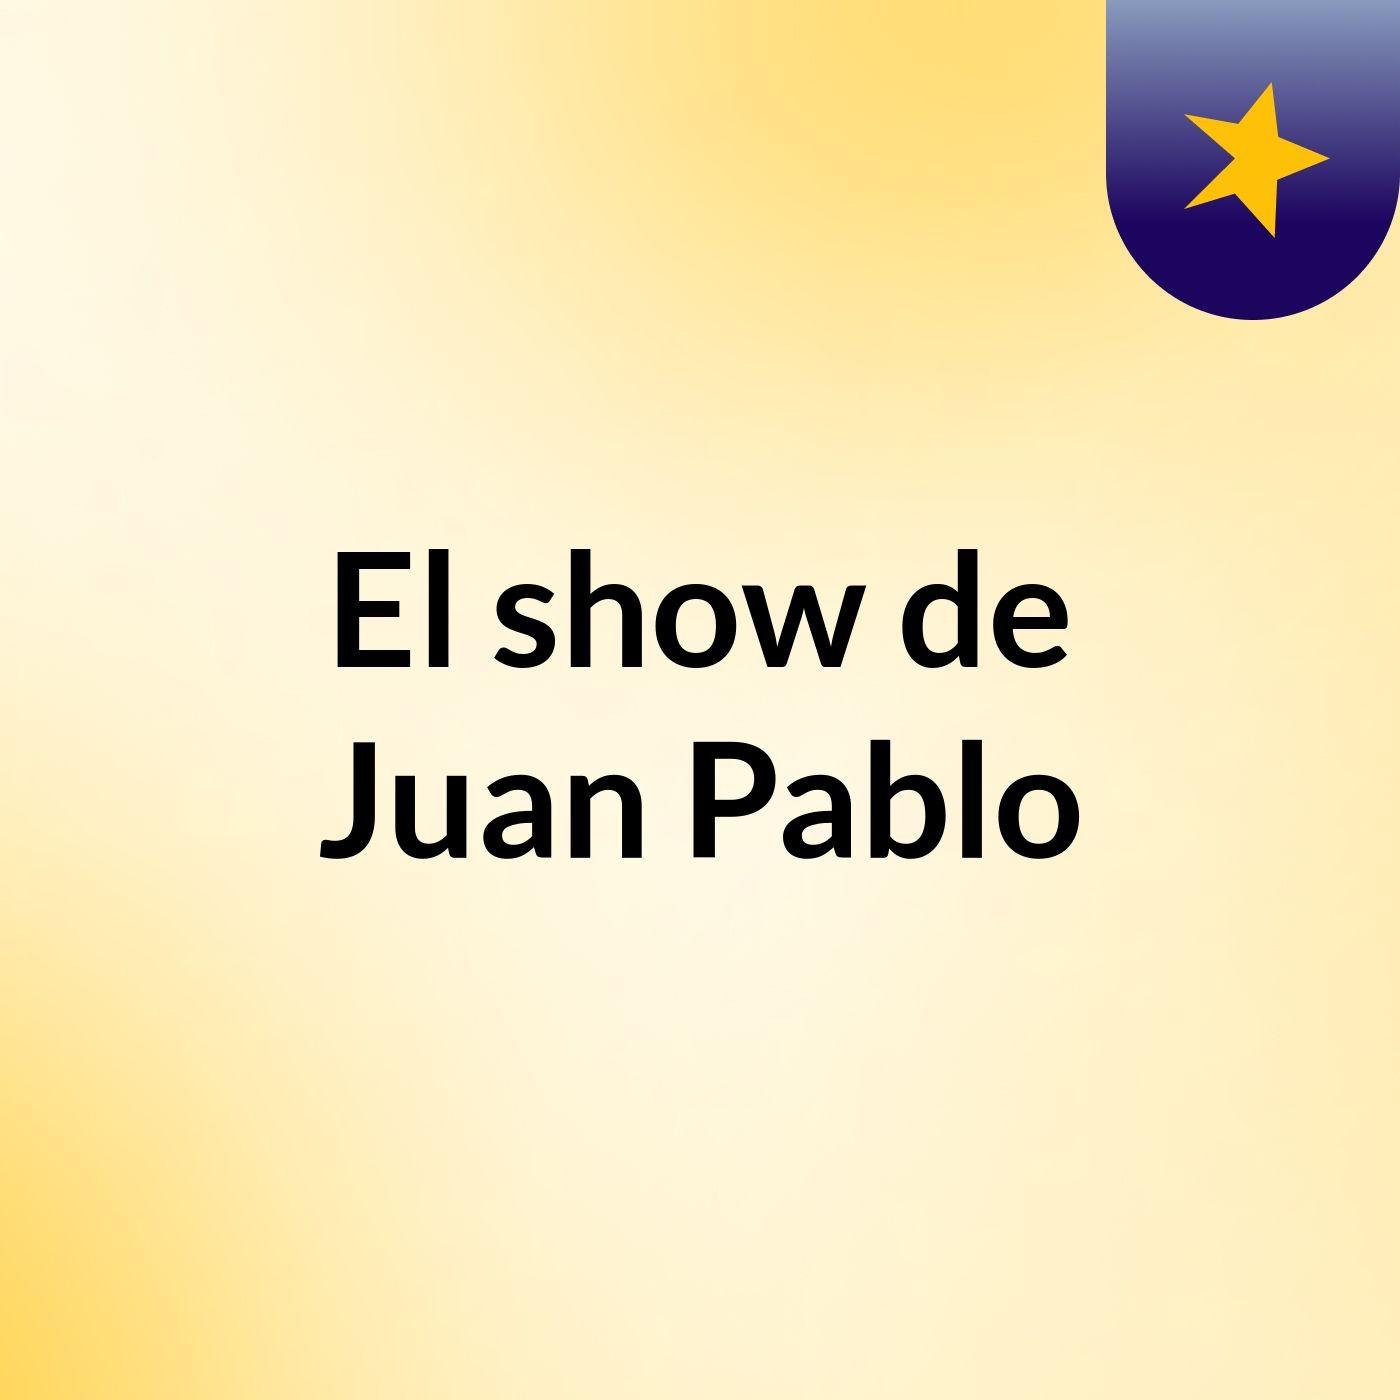 El show de Juan Pablo